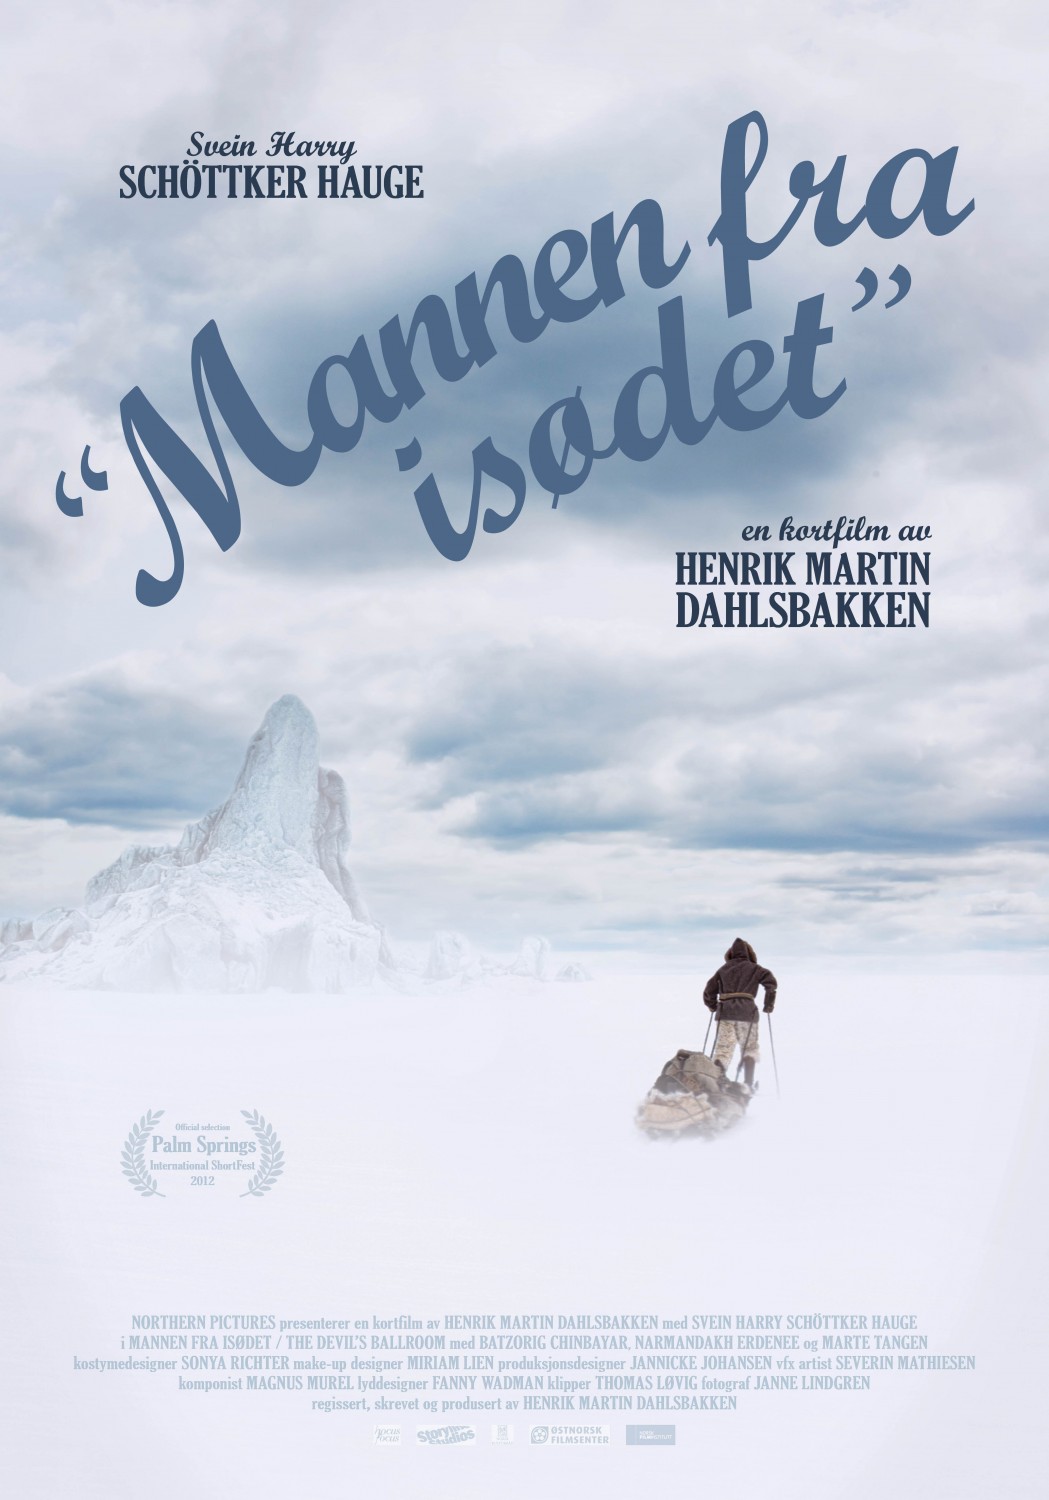 Extra Large Movie Poster Image for Mannen fra isdet